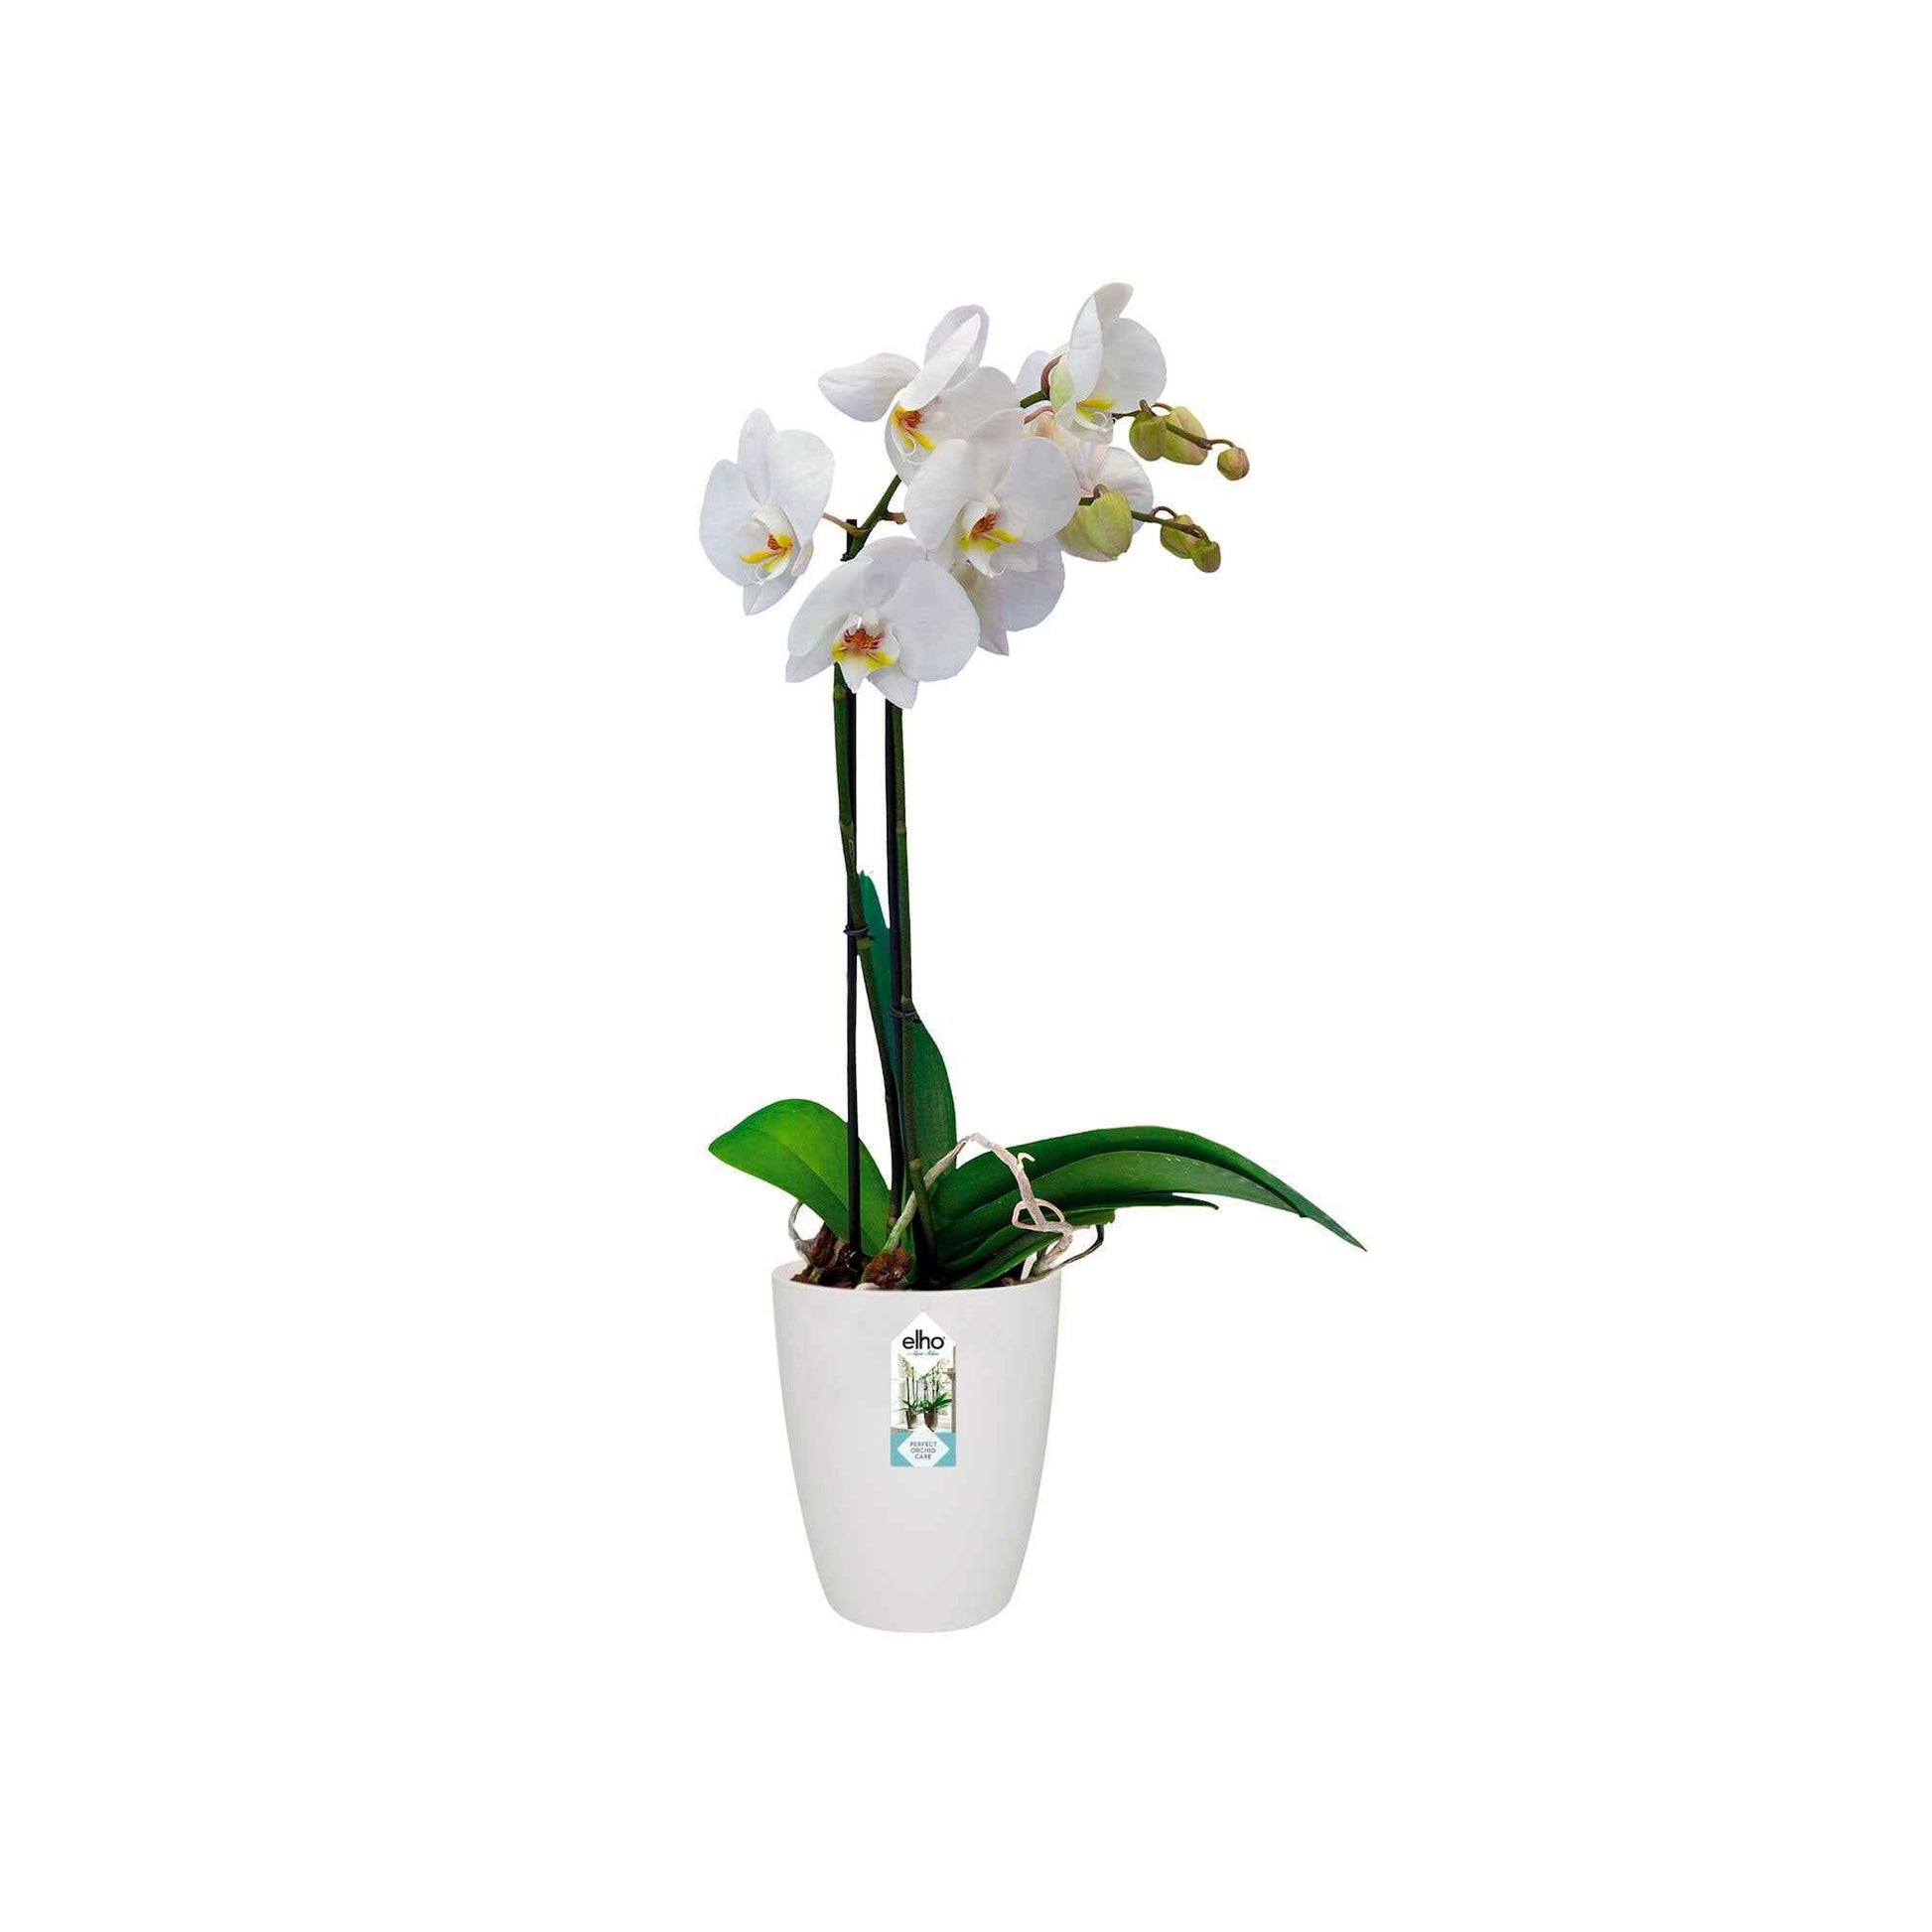 Elho Hoher Blumentopf Brussels orchid rund weiβ - Innentopf - Elho